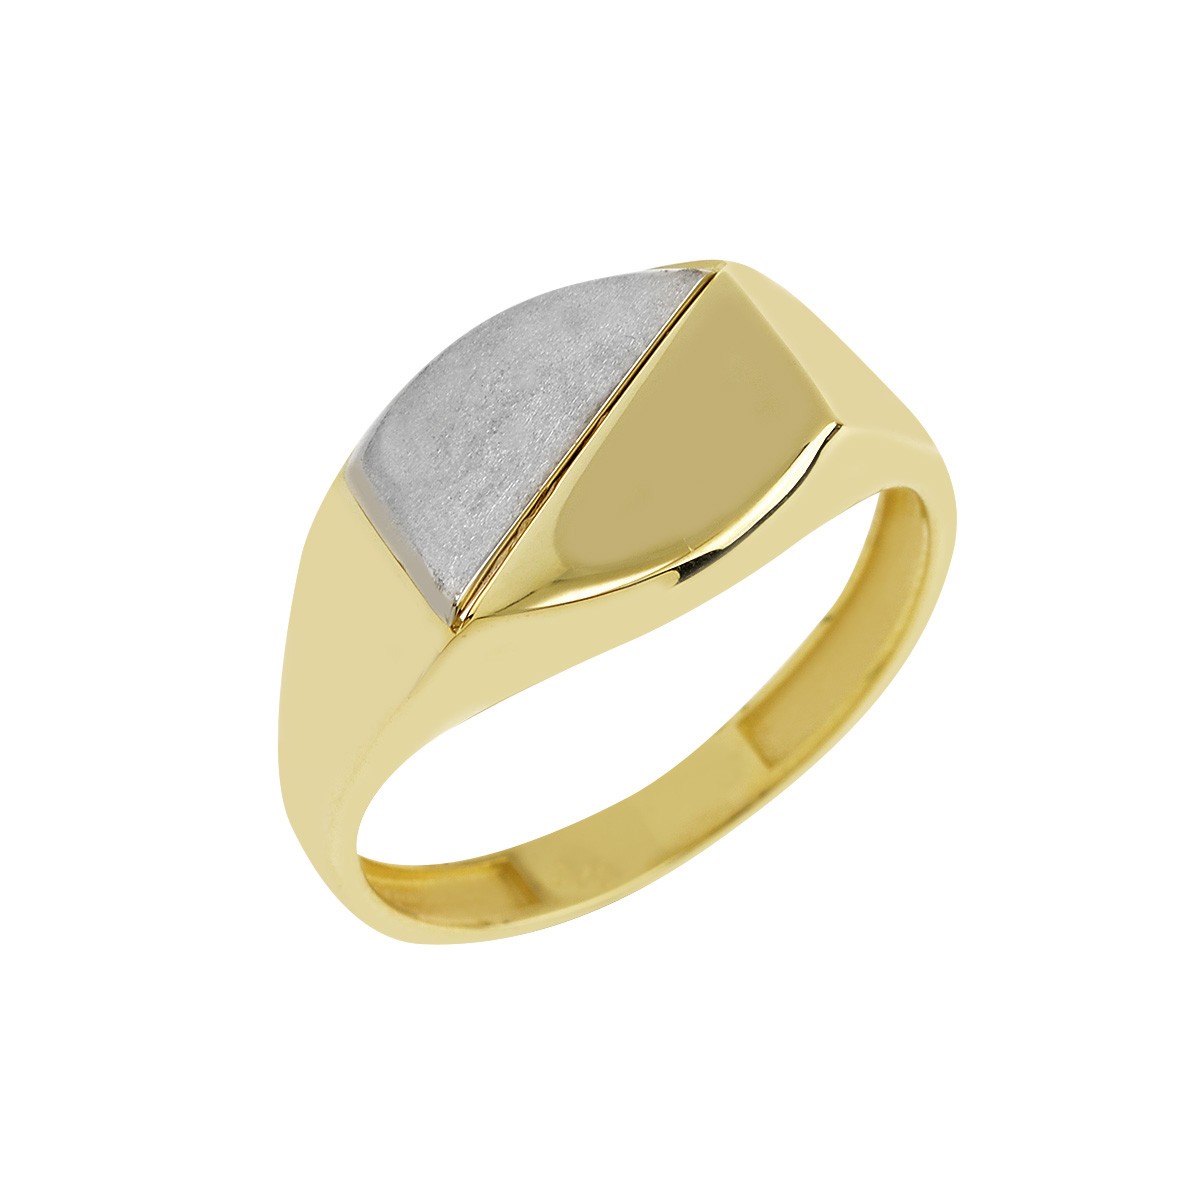 Δακτυλίδι Ανδρικό Χρυσό Κ9 με Πλάκα Κωδ: 401152